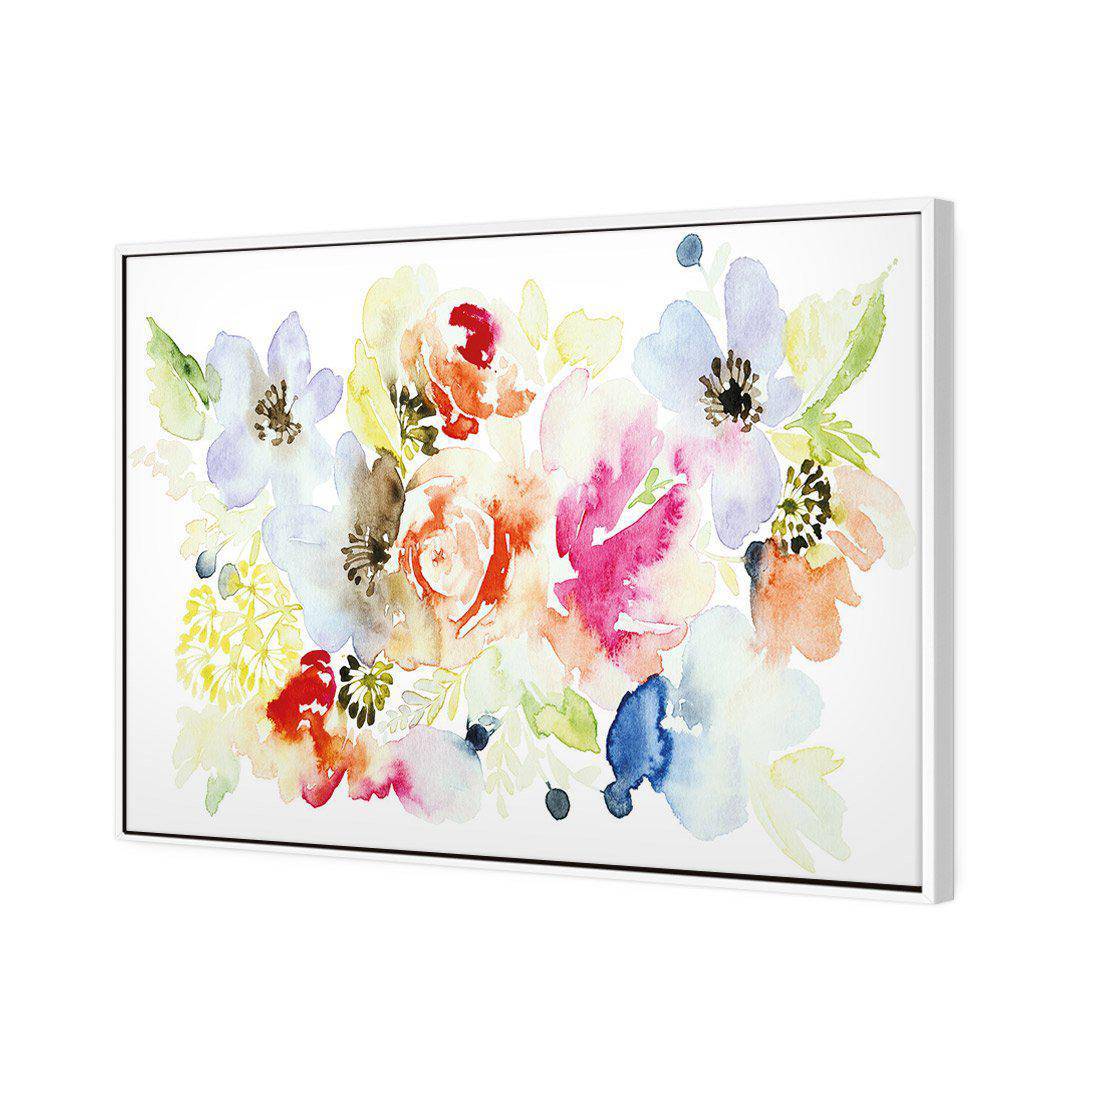 Floral Array Canvas Art-Canvas-Wall Art Designs-45x30cm-Canvas - White Frame-Wall Art Designs